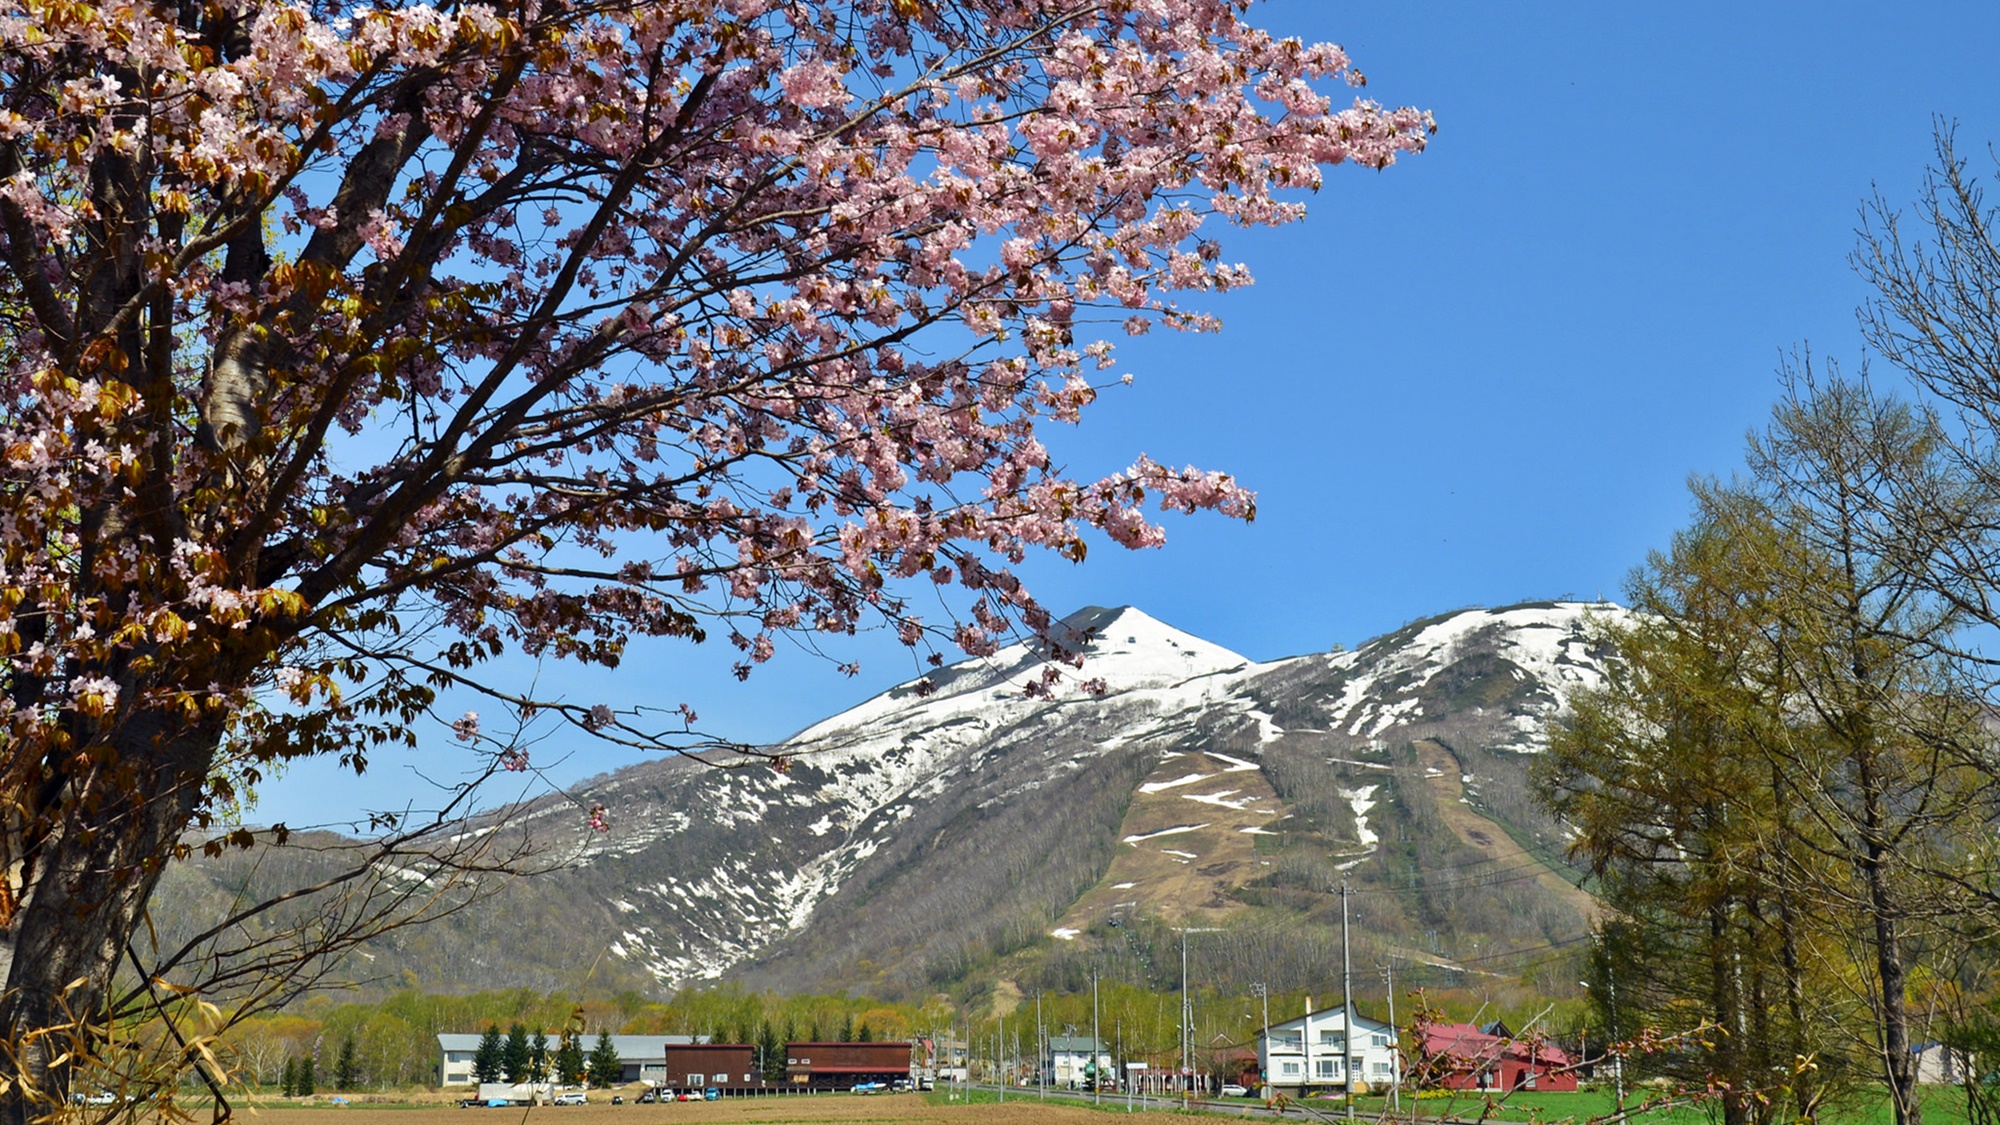 *[ニセコの春風景]雄大な山々と春の訪れを告げる桜の花。アンヌプリの春の風景。